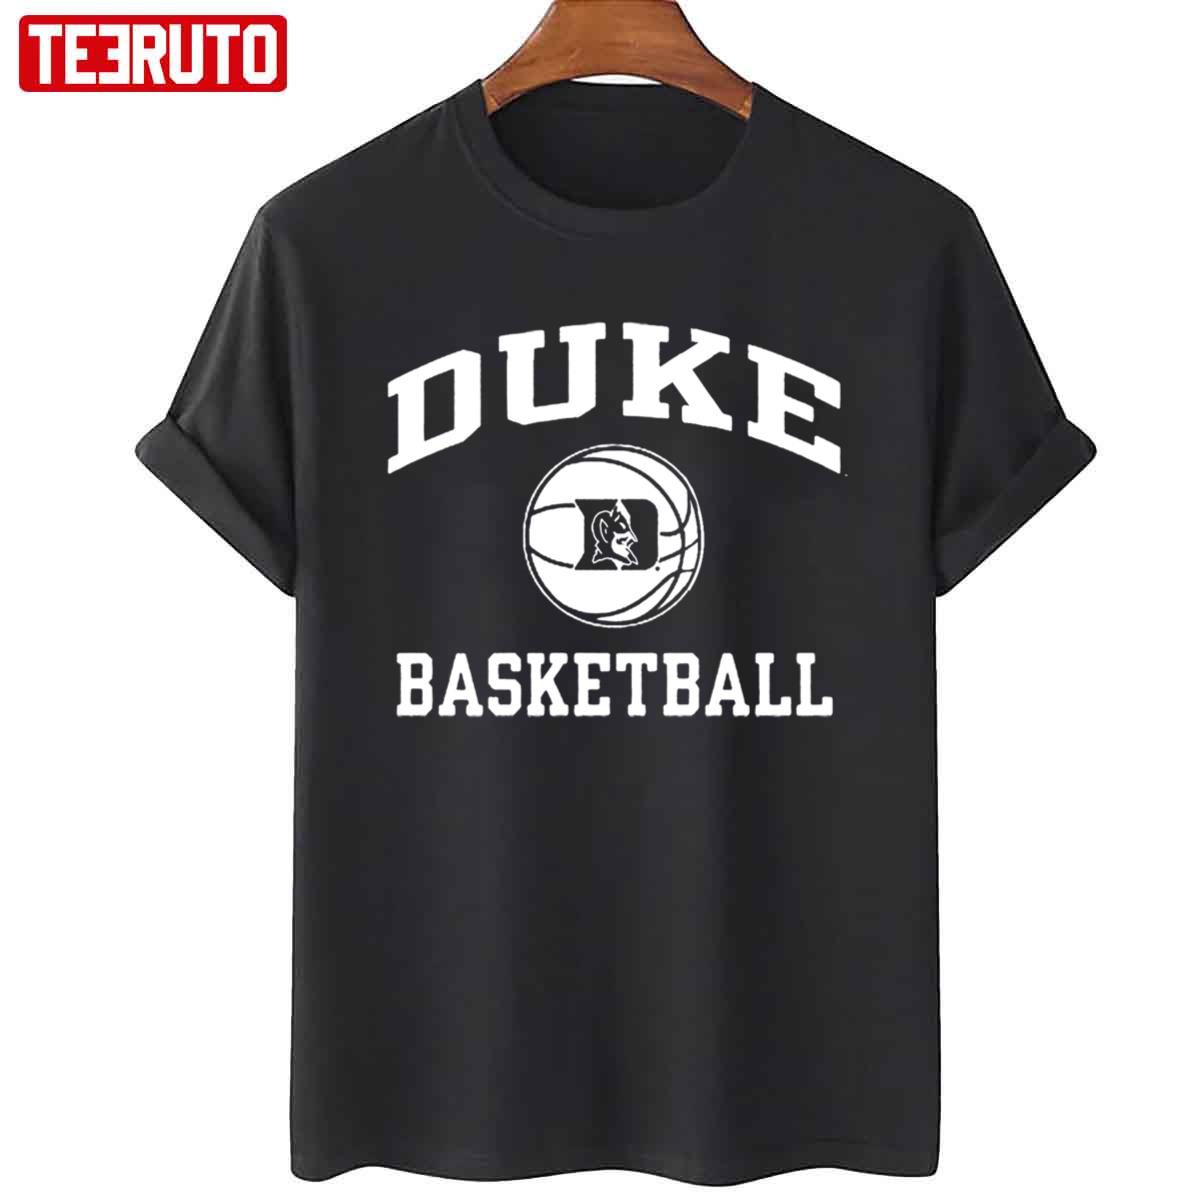 Duke University Basketball Unisex T-Shirt